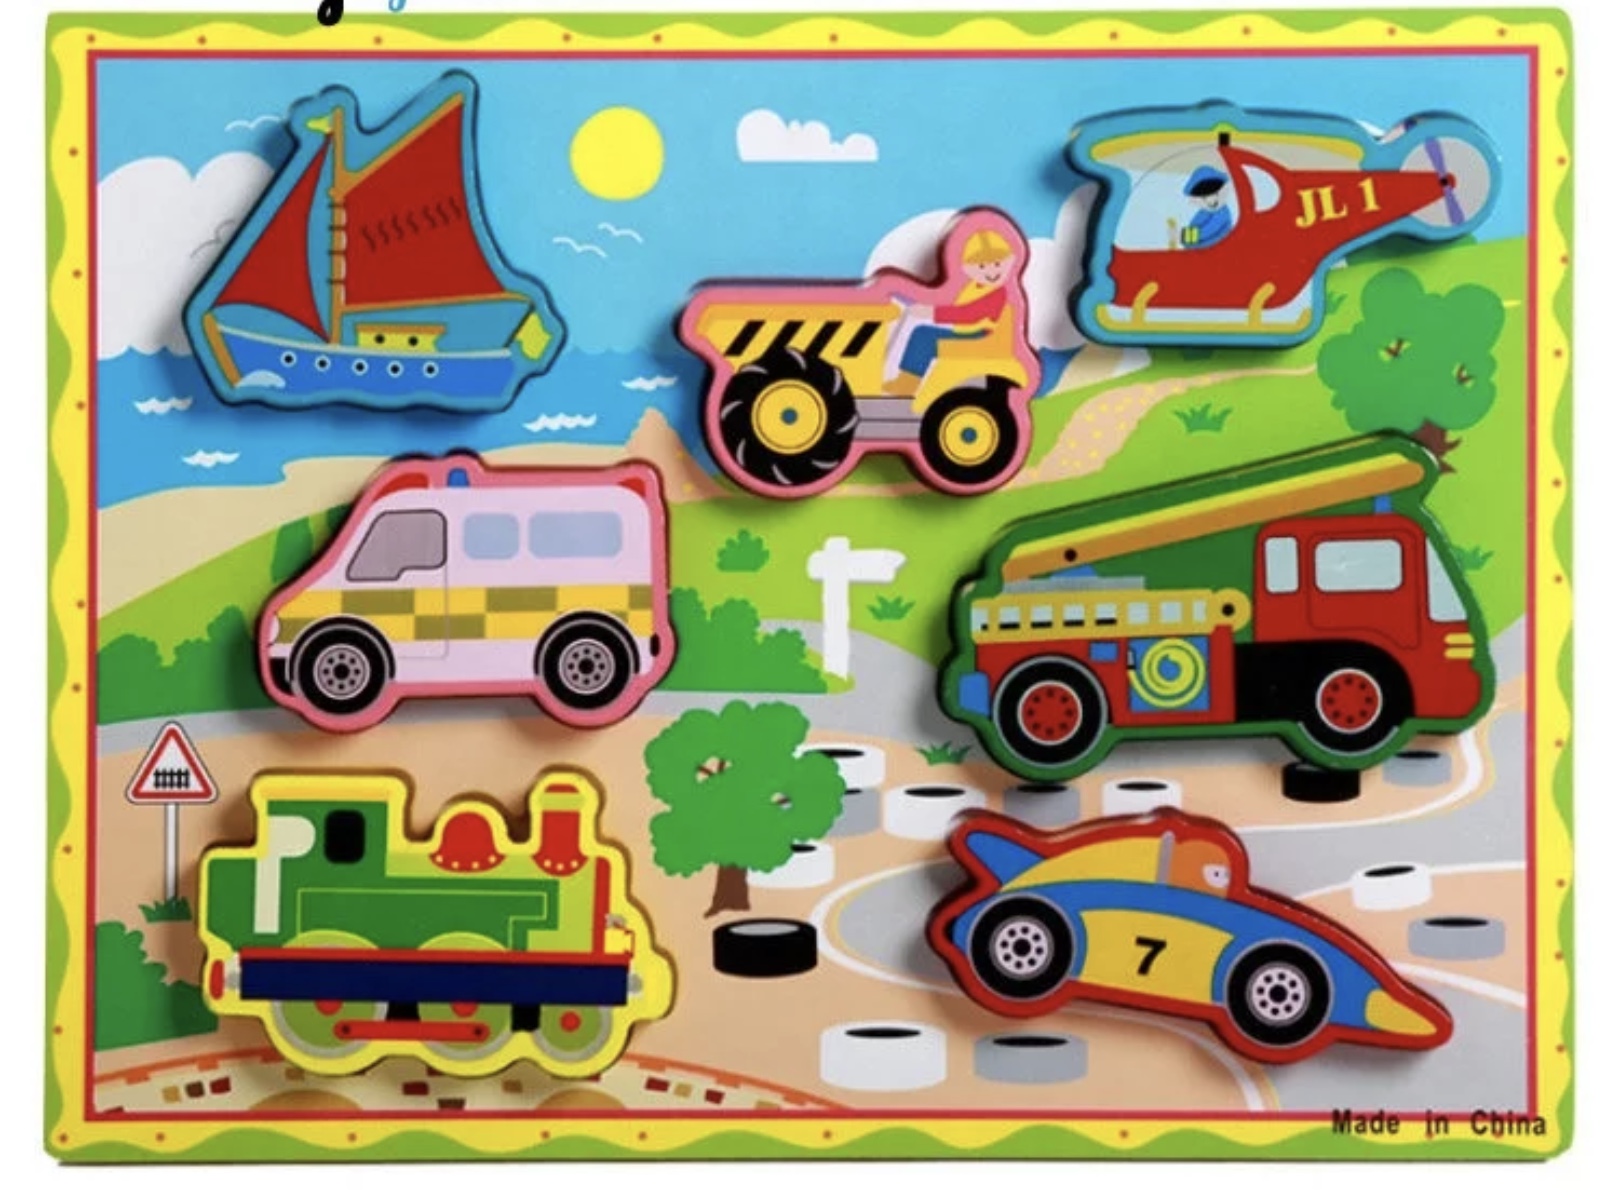 Puzzle 3-D din lemn cu mașini bărci avioane locomotive tip planșe cu șase piese fiecare piesă Se găsește desenată imaginea acestuia puzzle 3-D in castru cu piese groase și mari ușor de manevrat de micile manute